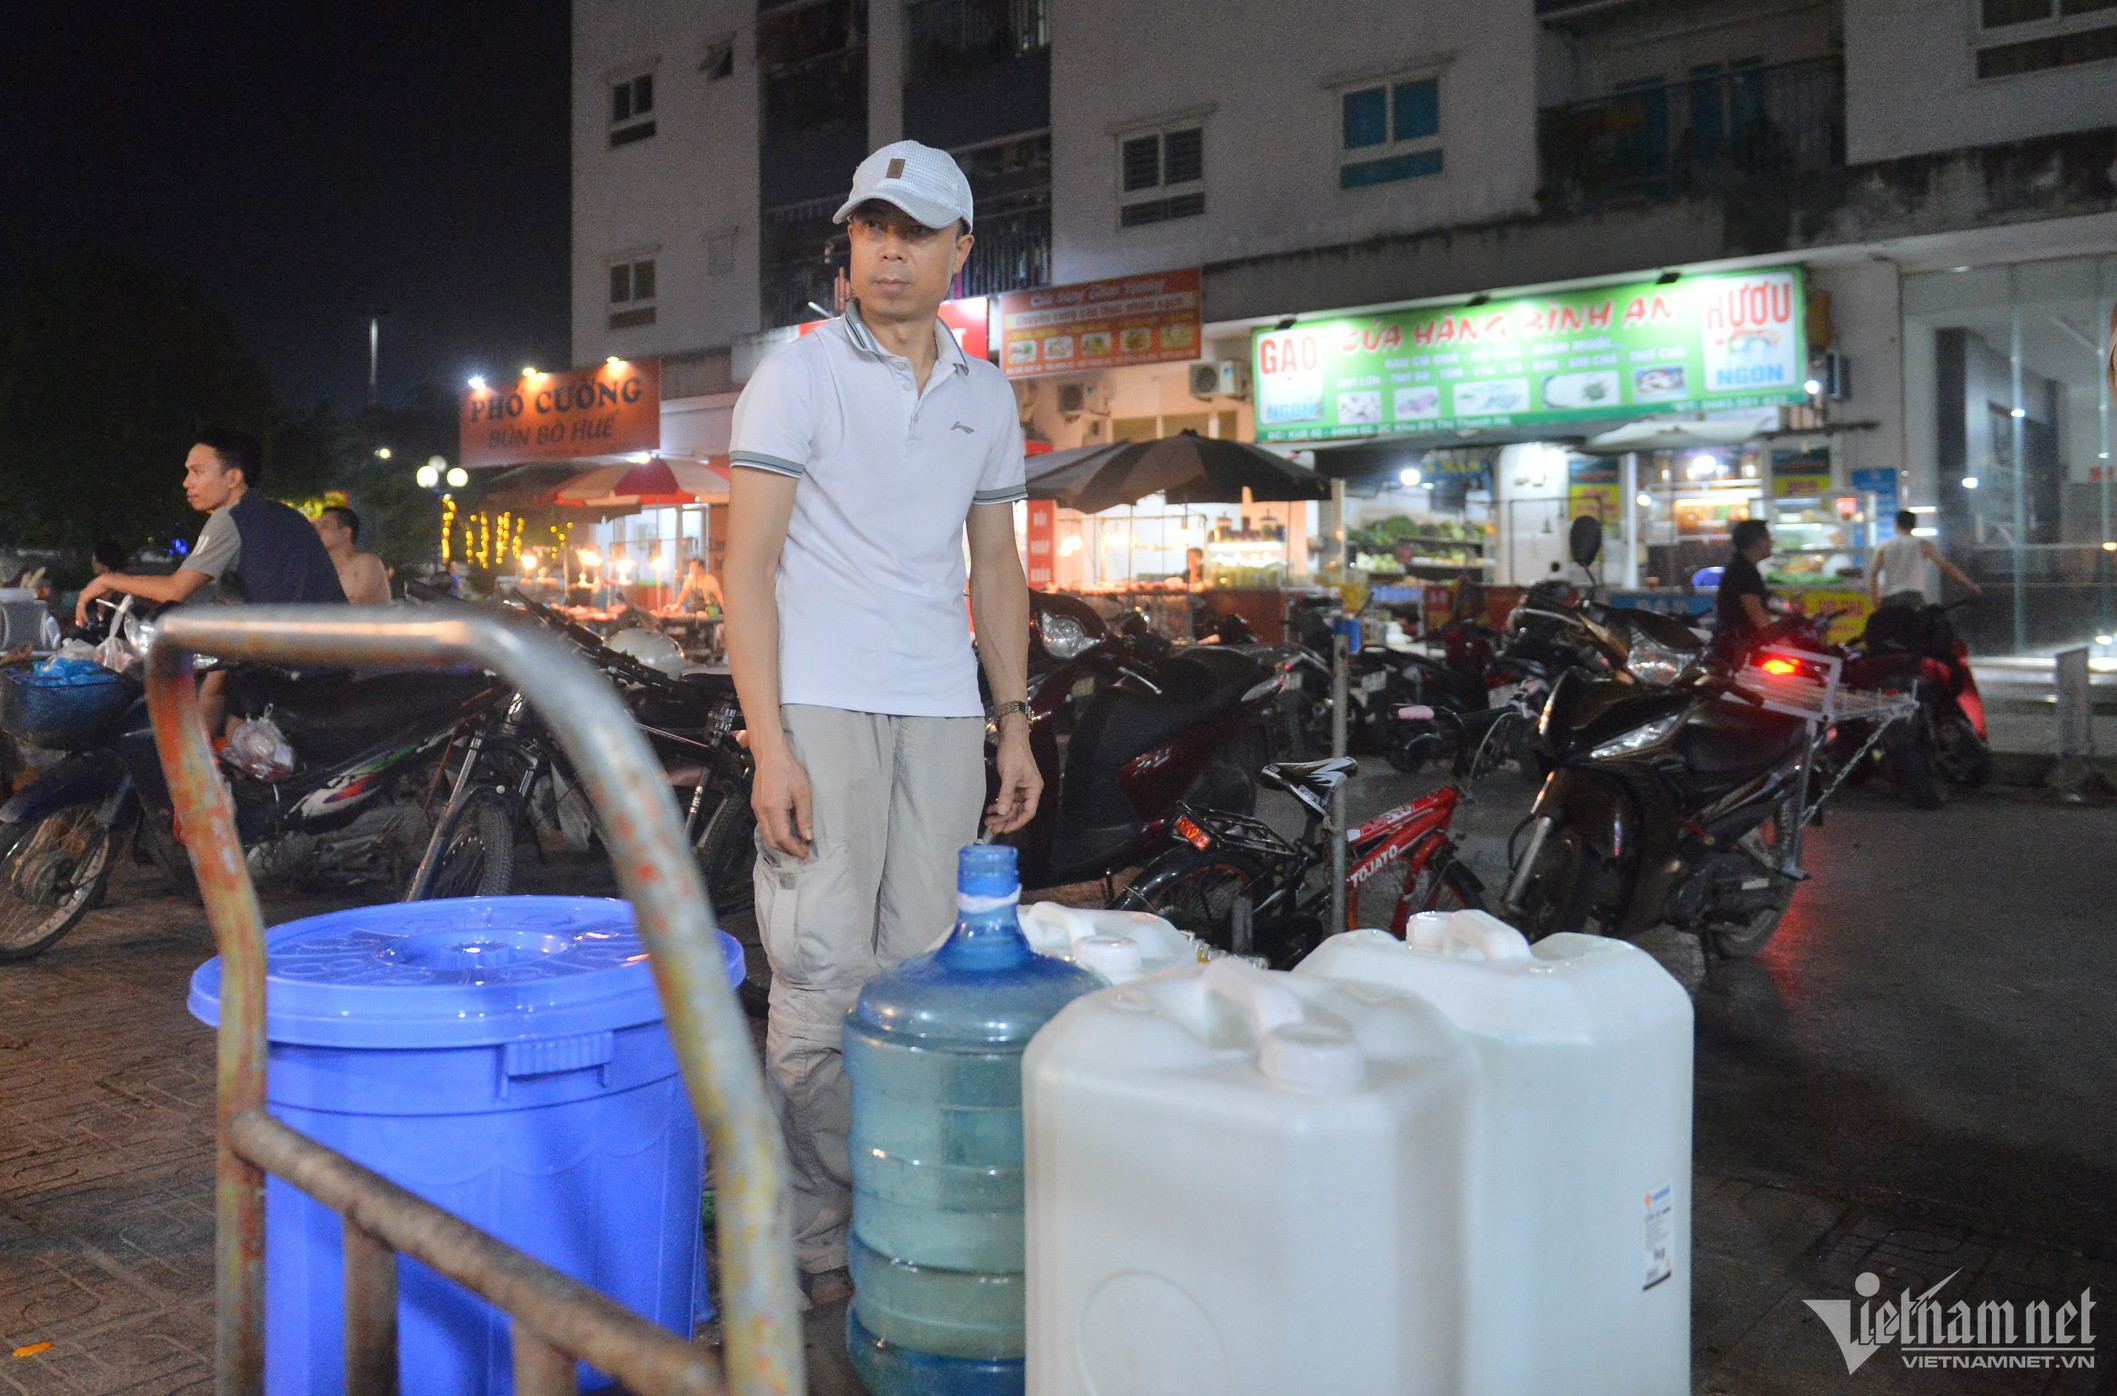 Chung cư mất nước giữa đêm Hà Nội nóng hầm hập, trăm hộ dân lỉnh kỉnh xô chậu-1